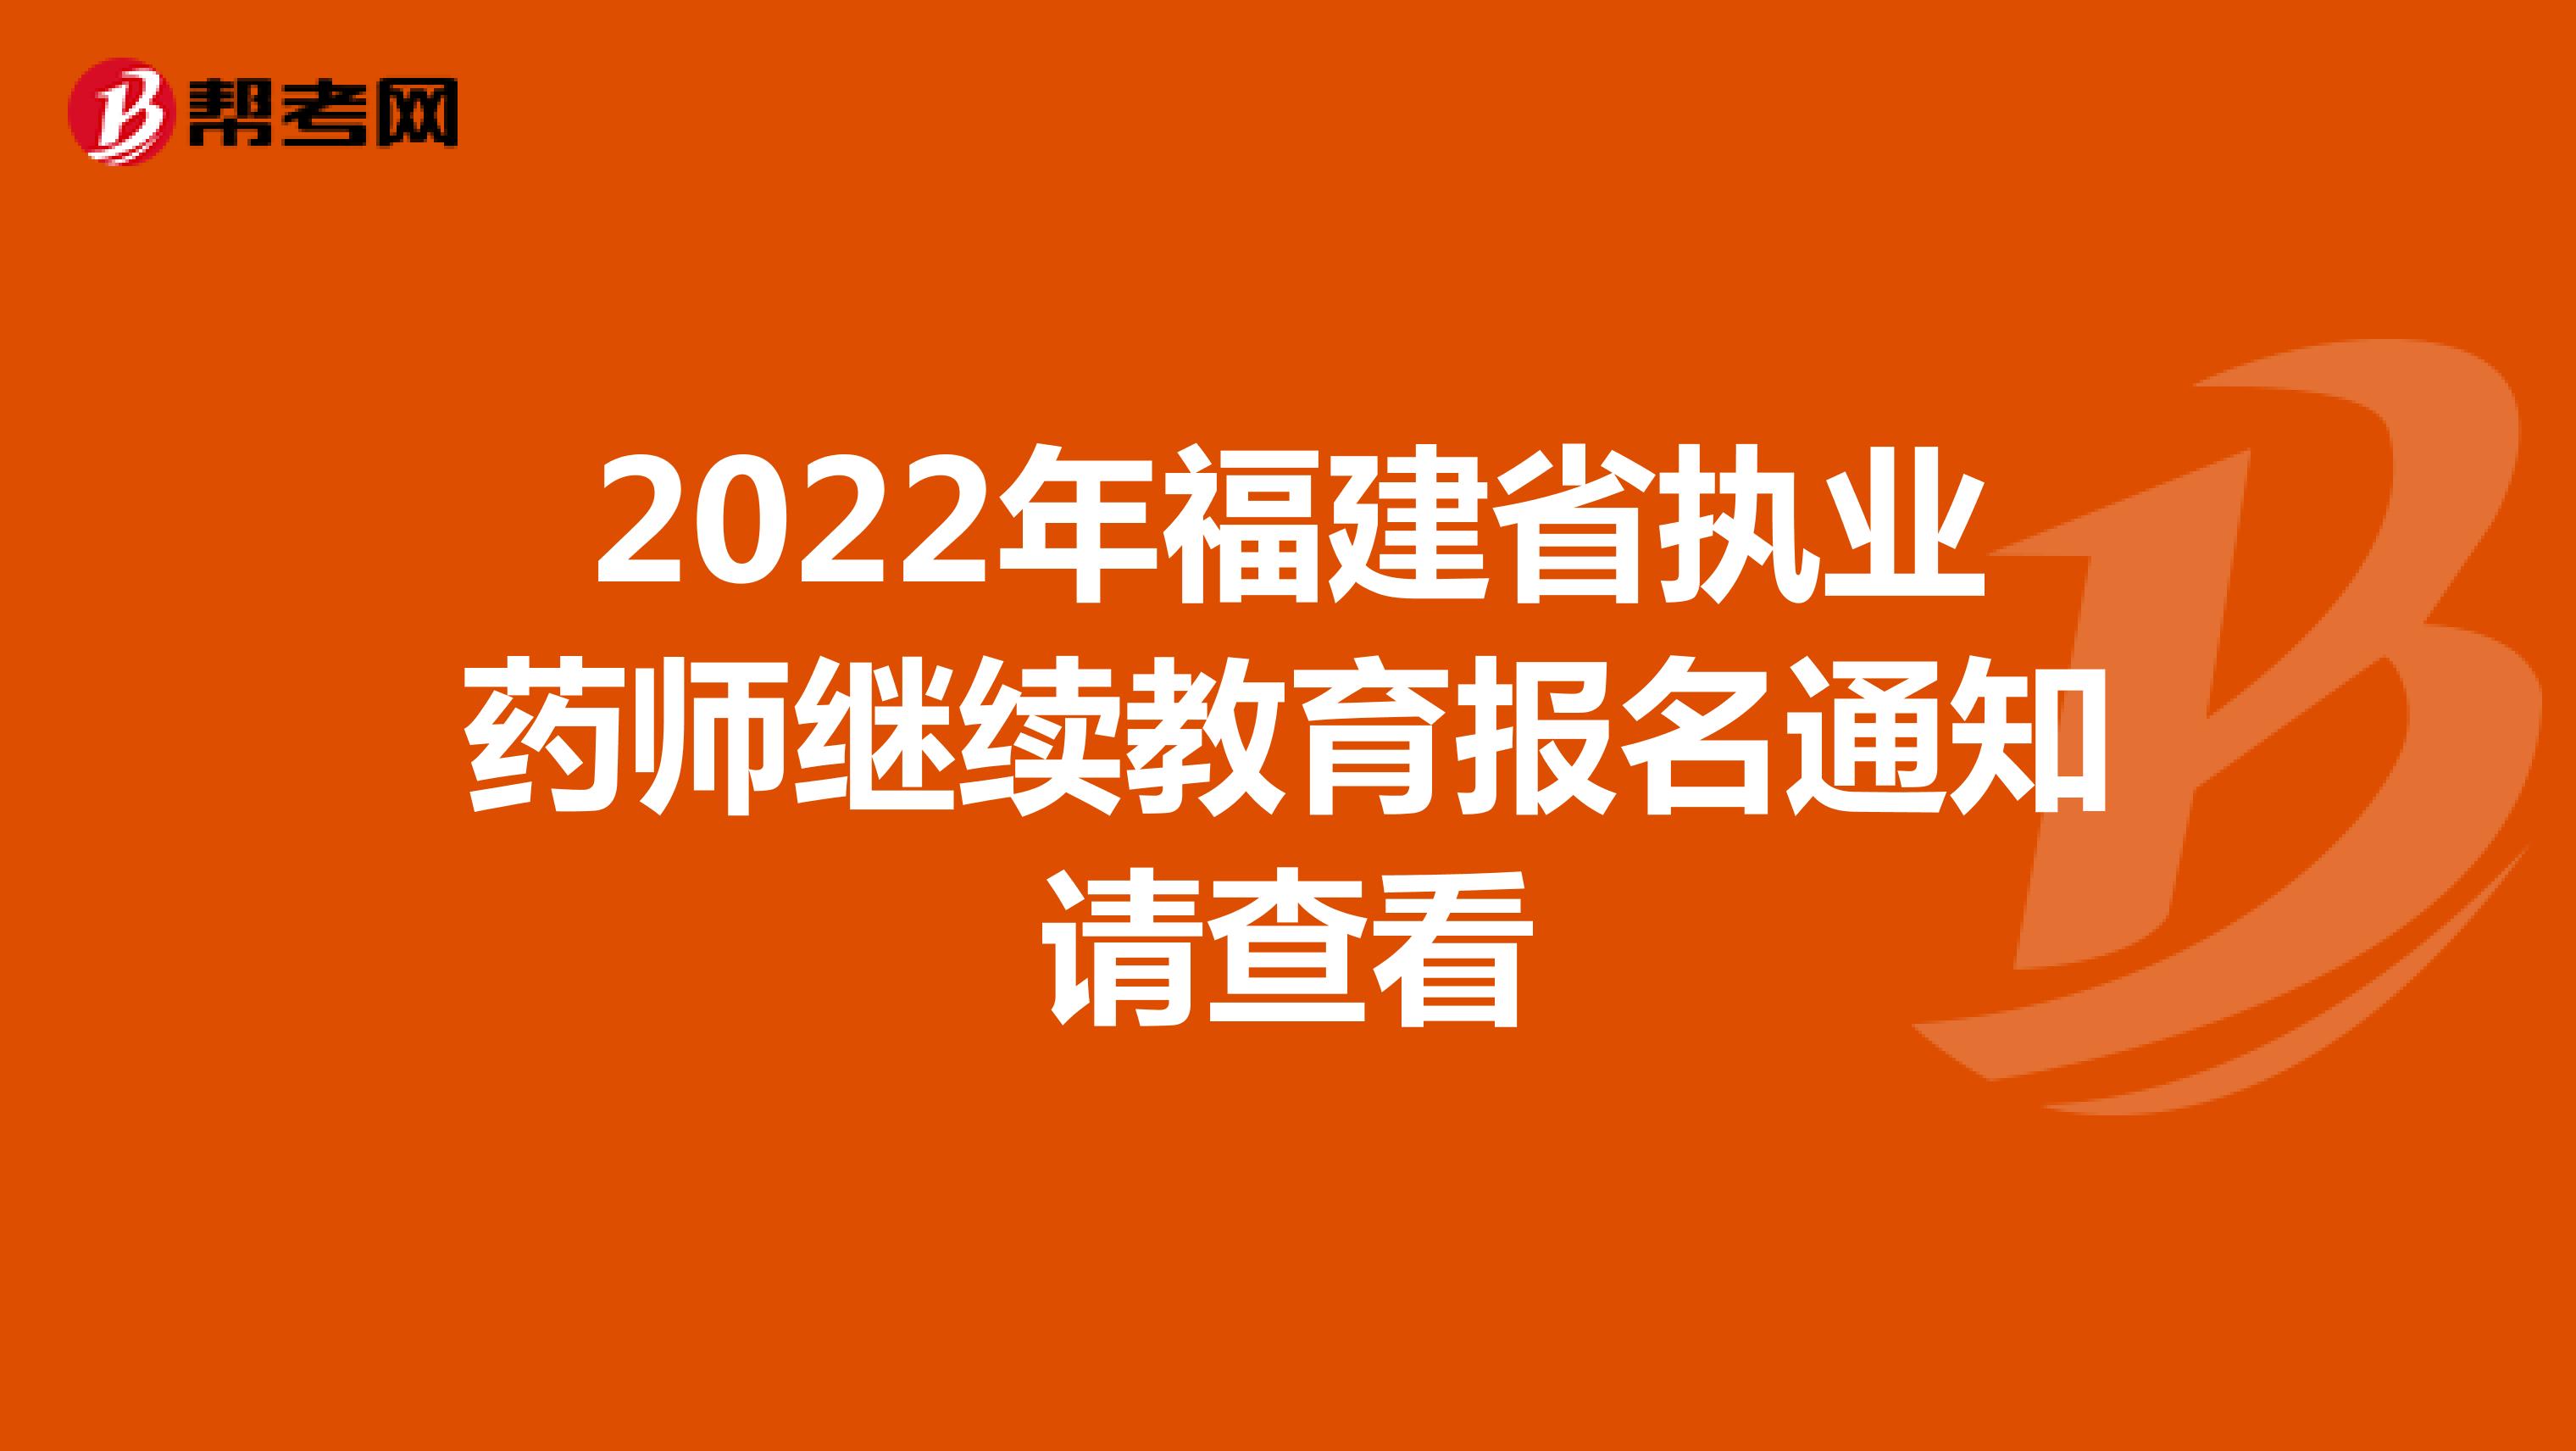 2022年福建省执业药师继续教育报名通知请查看